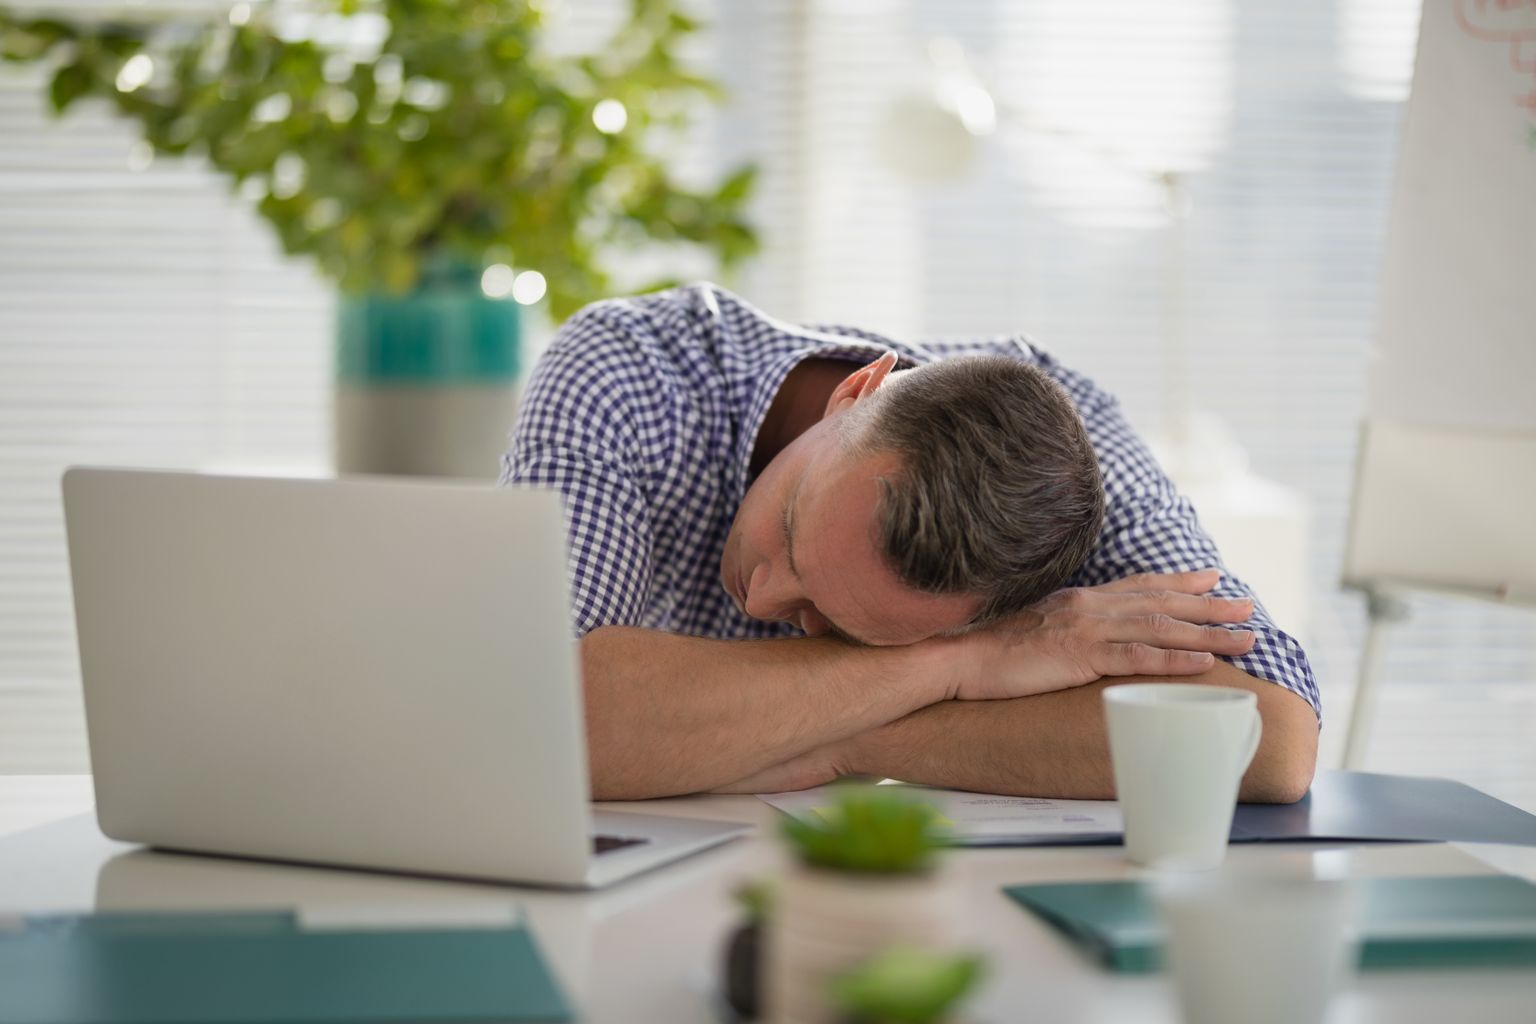 Krooniline ja seletamatu väsimus on üks lümfoidse leukeemia sümptomeid.